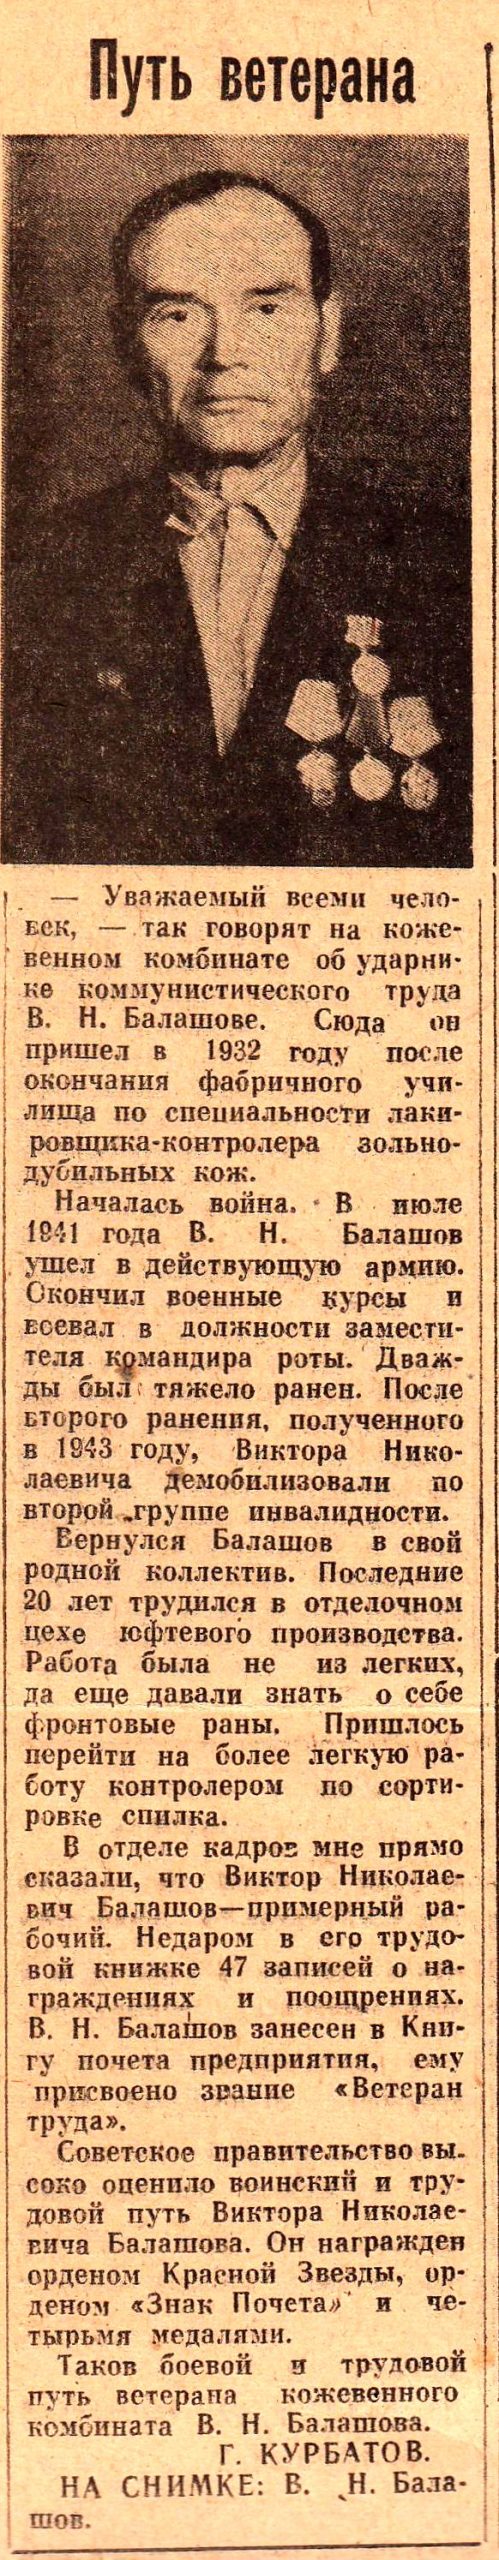 Красное Прикамье. - 1971. - 16 июня. - С.2.